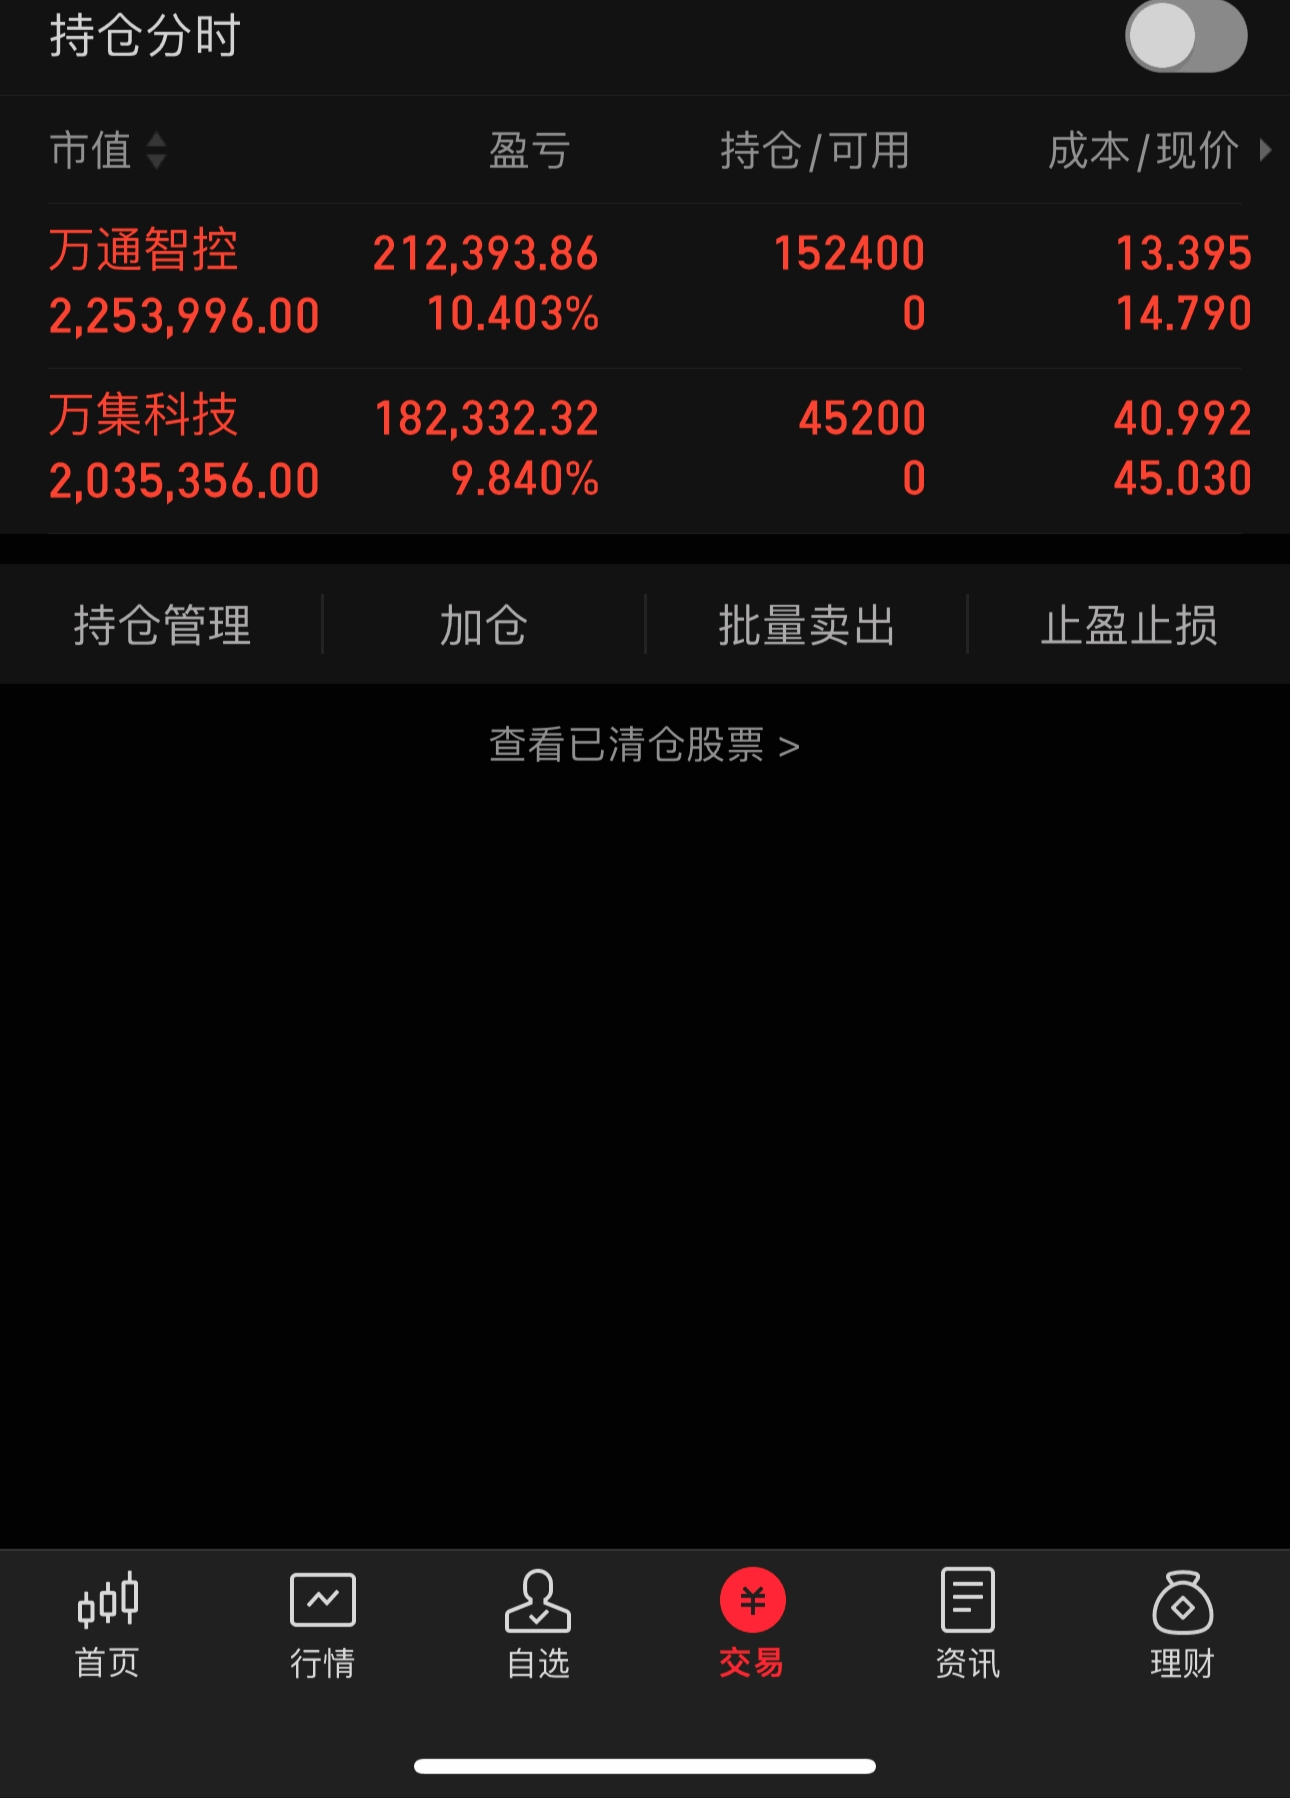 贵州茅台股份股票图片